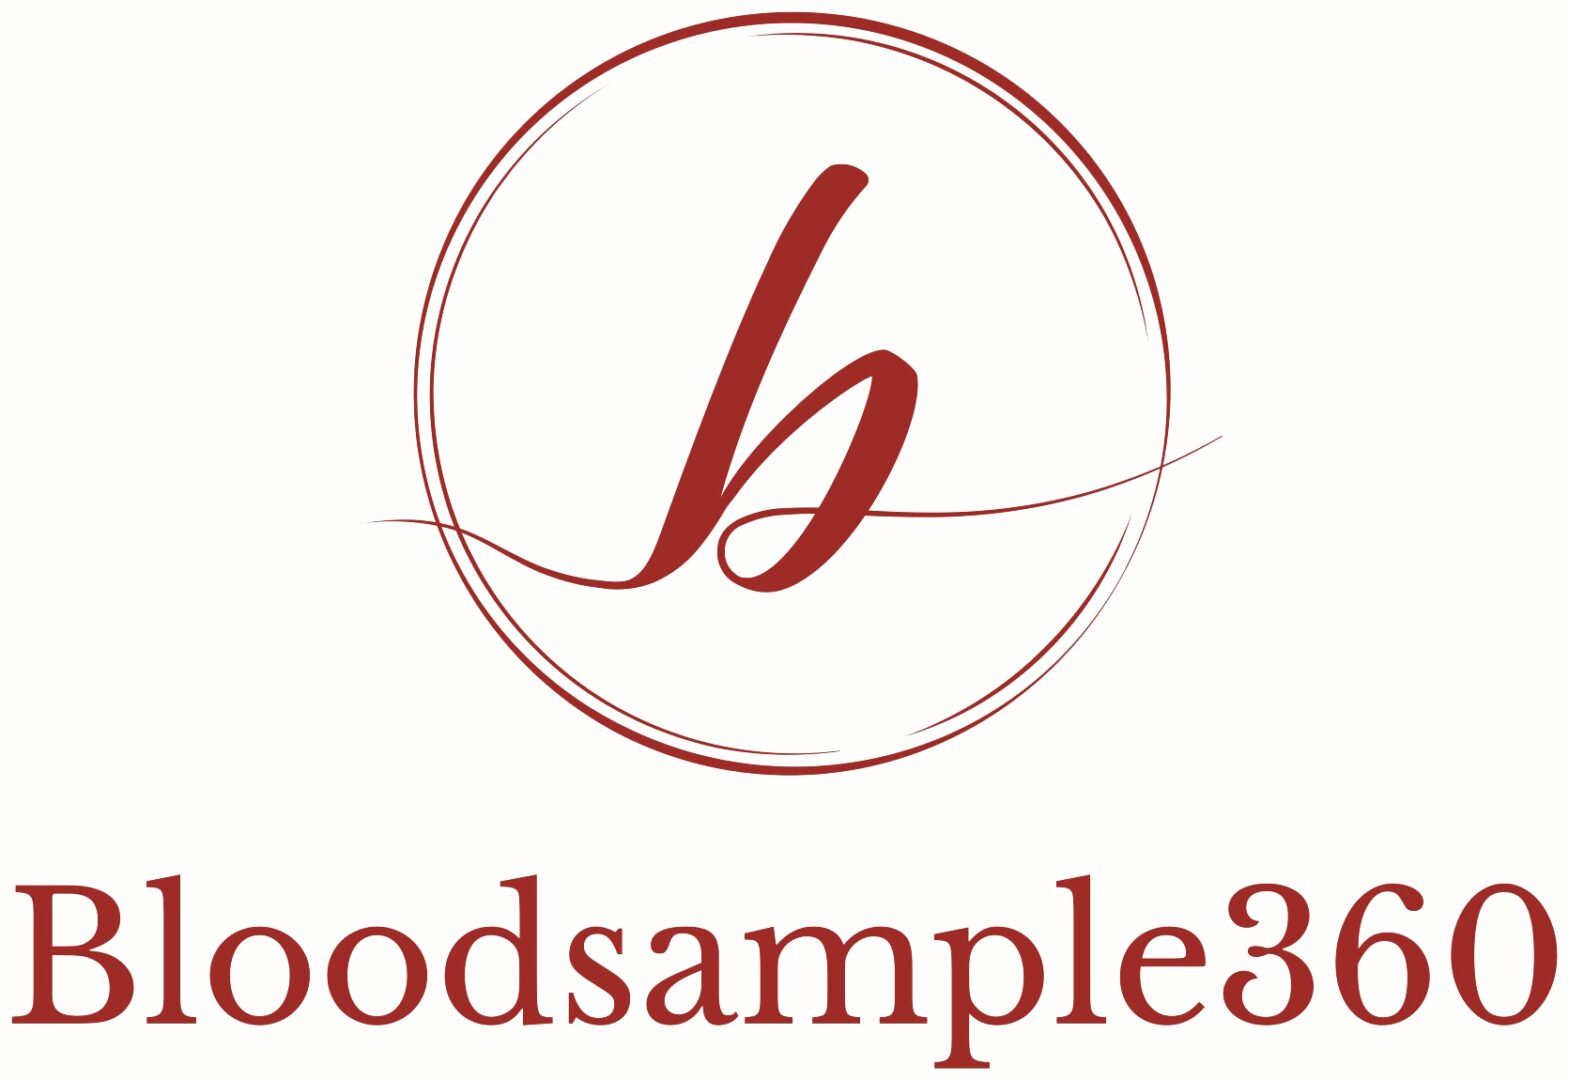 bloodsample360 logo